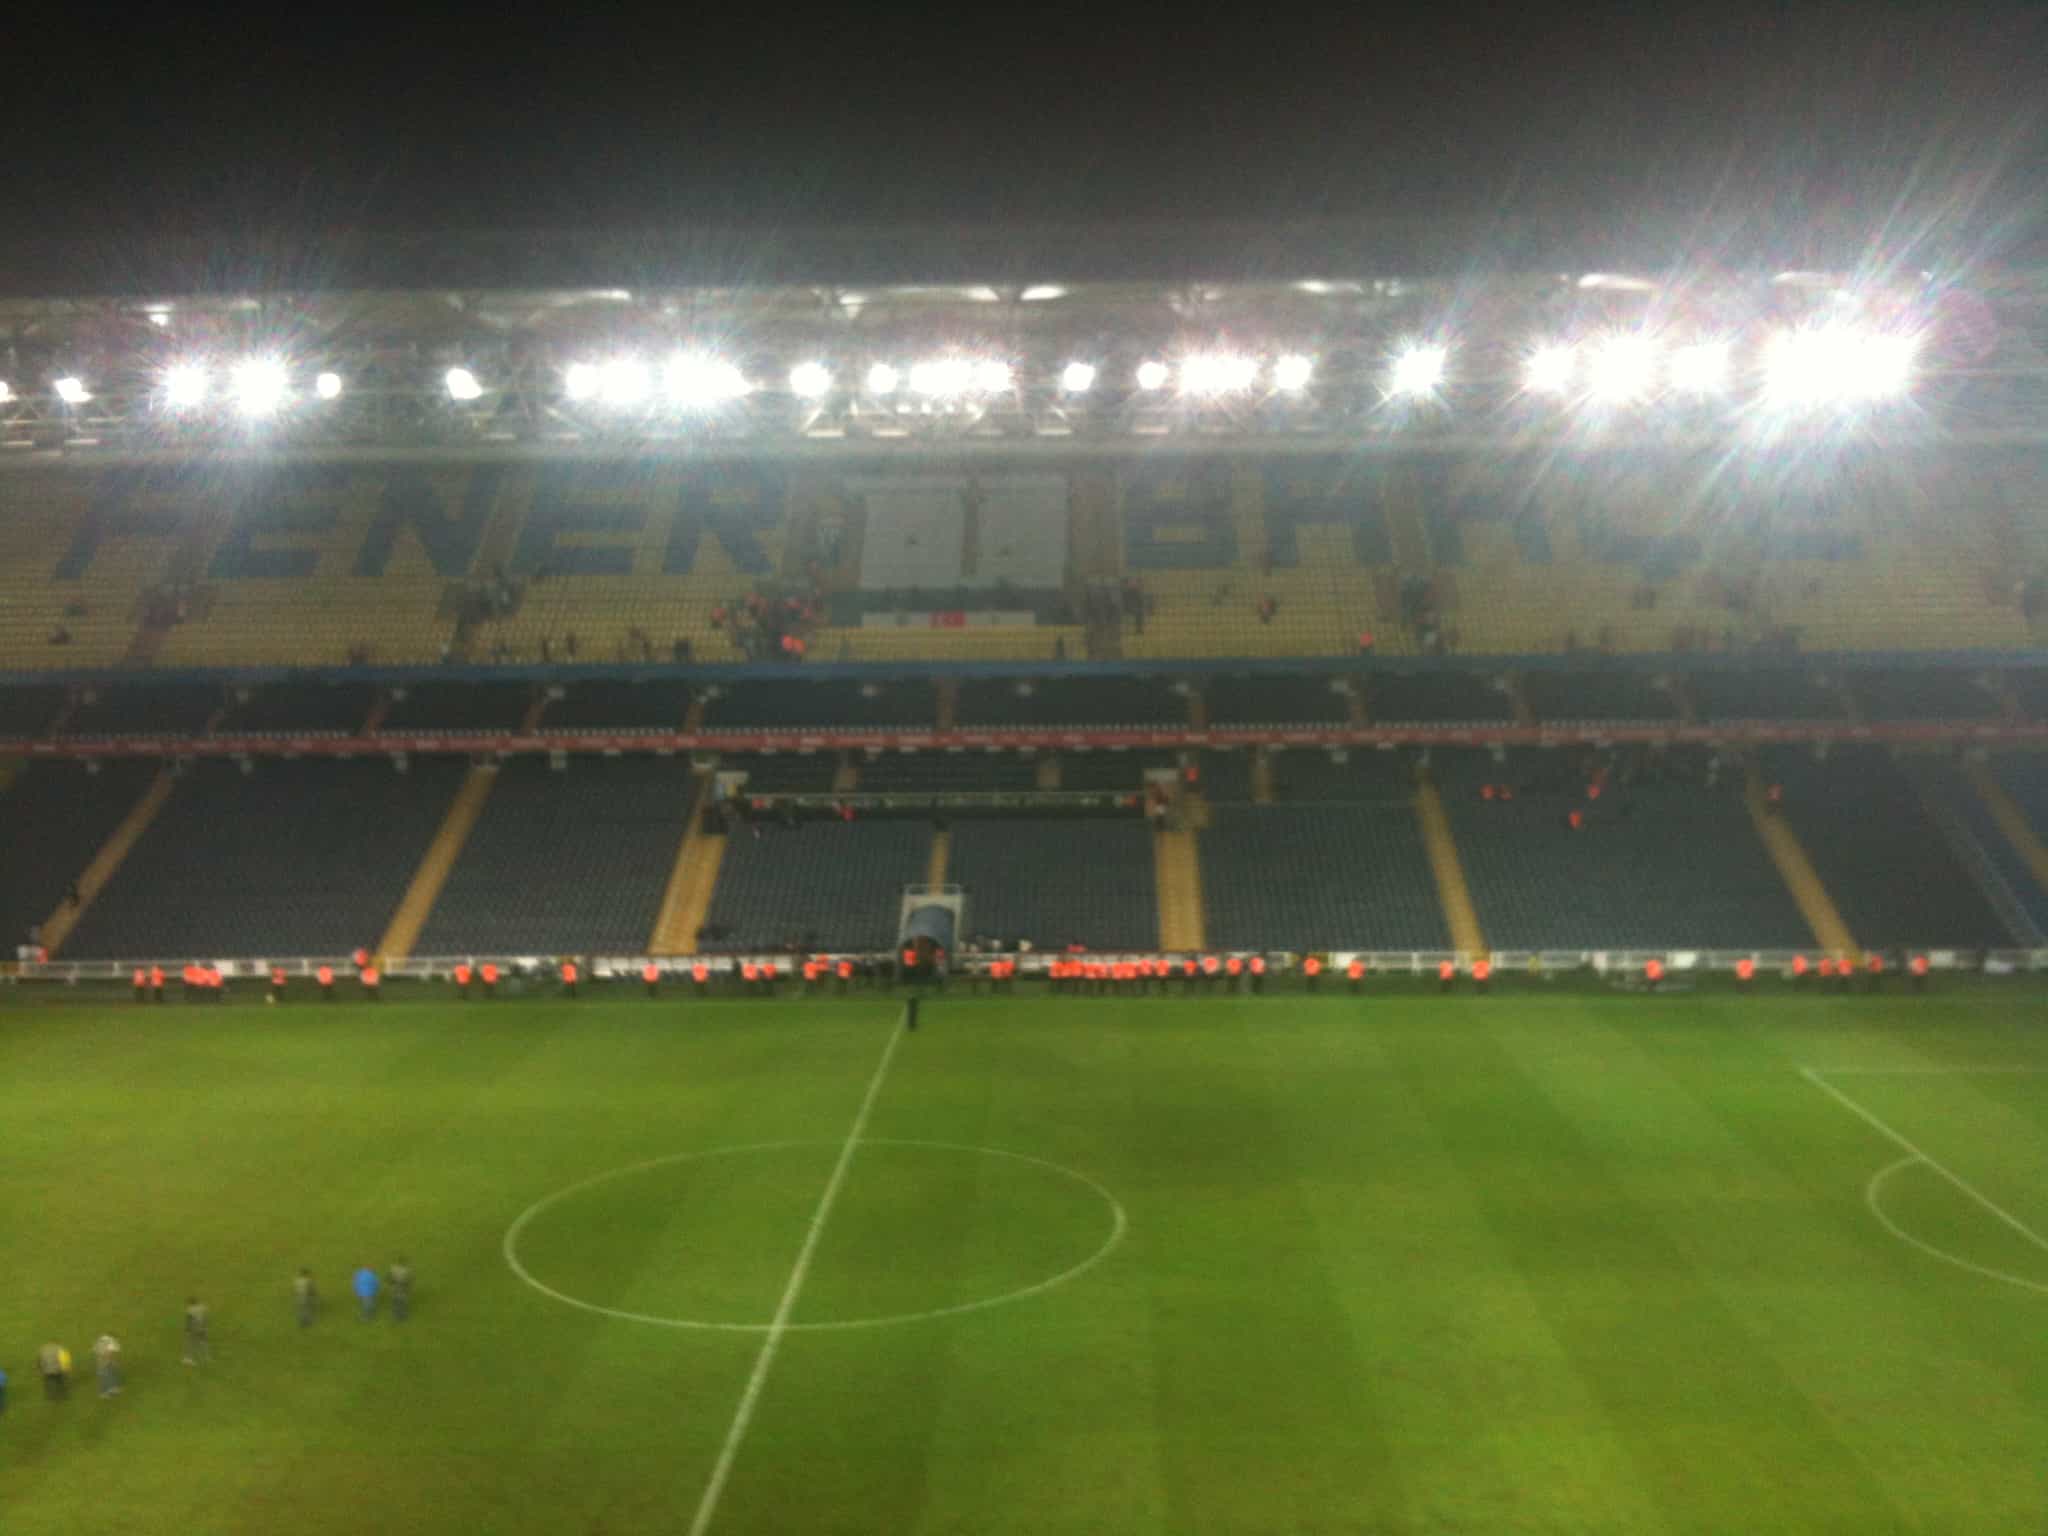 Şükrü Saracoğlu Stadyumu in Kadıköy, Istanbul Turkey